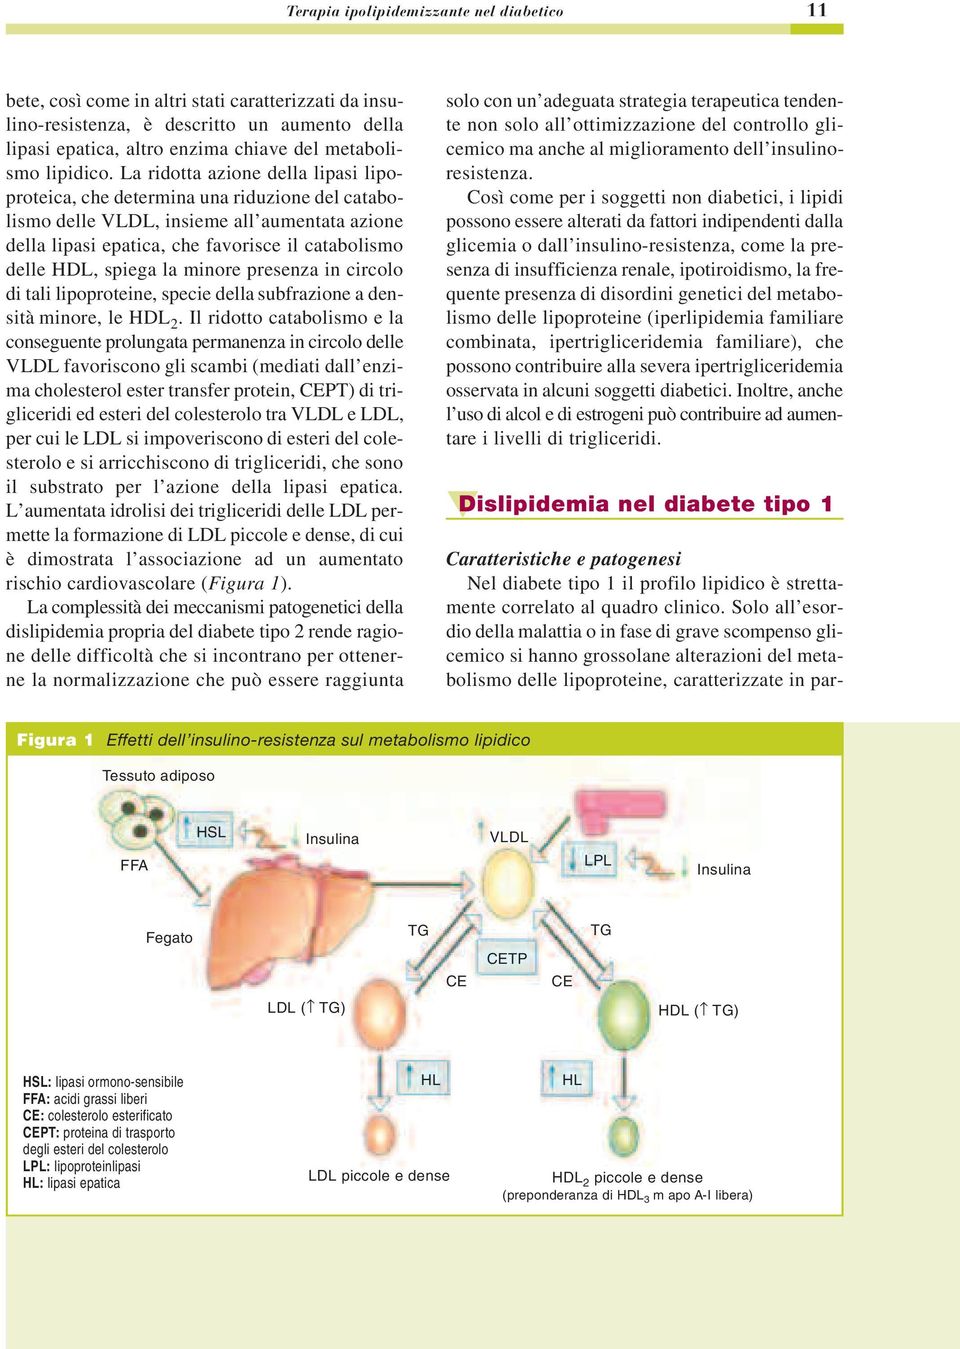 La ridotta azione della lipasi lipoproteica, che determina una riduzione del catabolismo delle VLDL, insieme all aumentata azione della lipasi epatica, che favorisce il catabolismo delle HDL, spiega